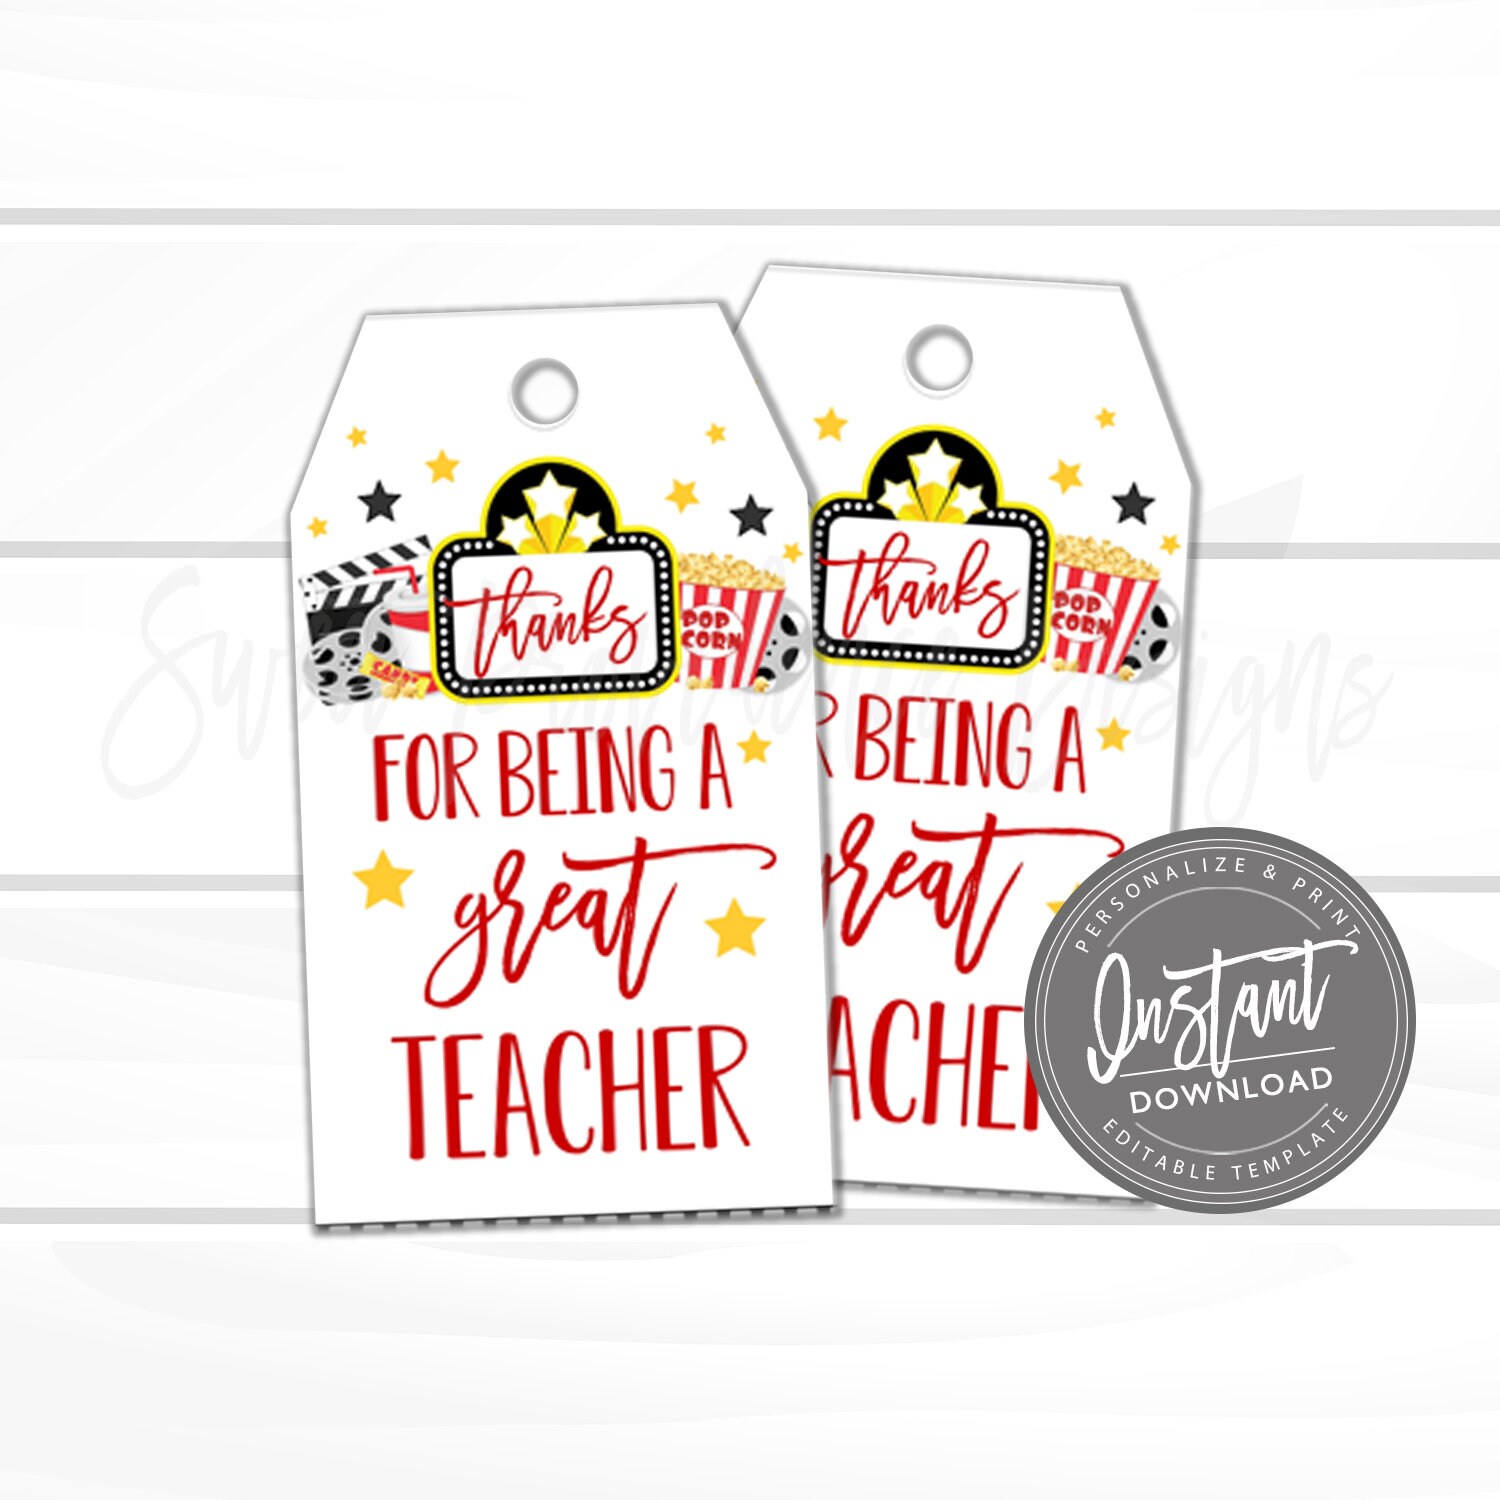 Teacher Appreciation Gift Tag, End of School Year Tag, Teacher